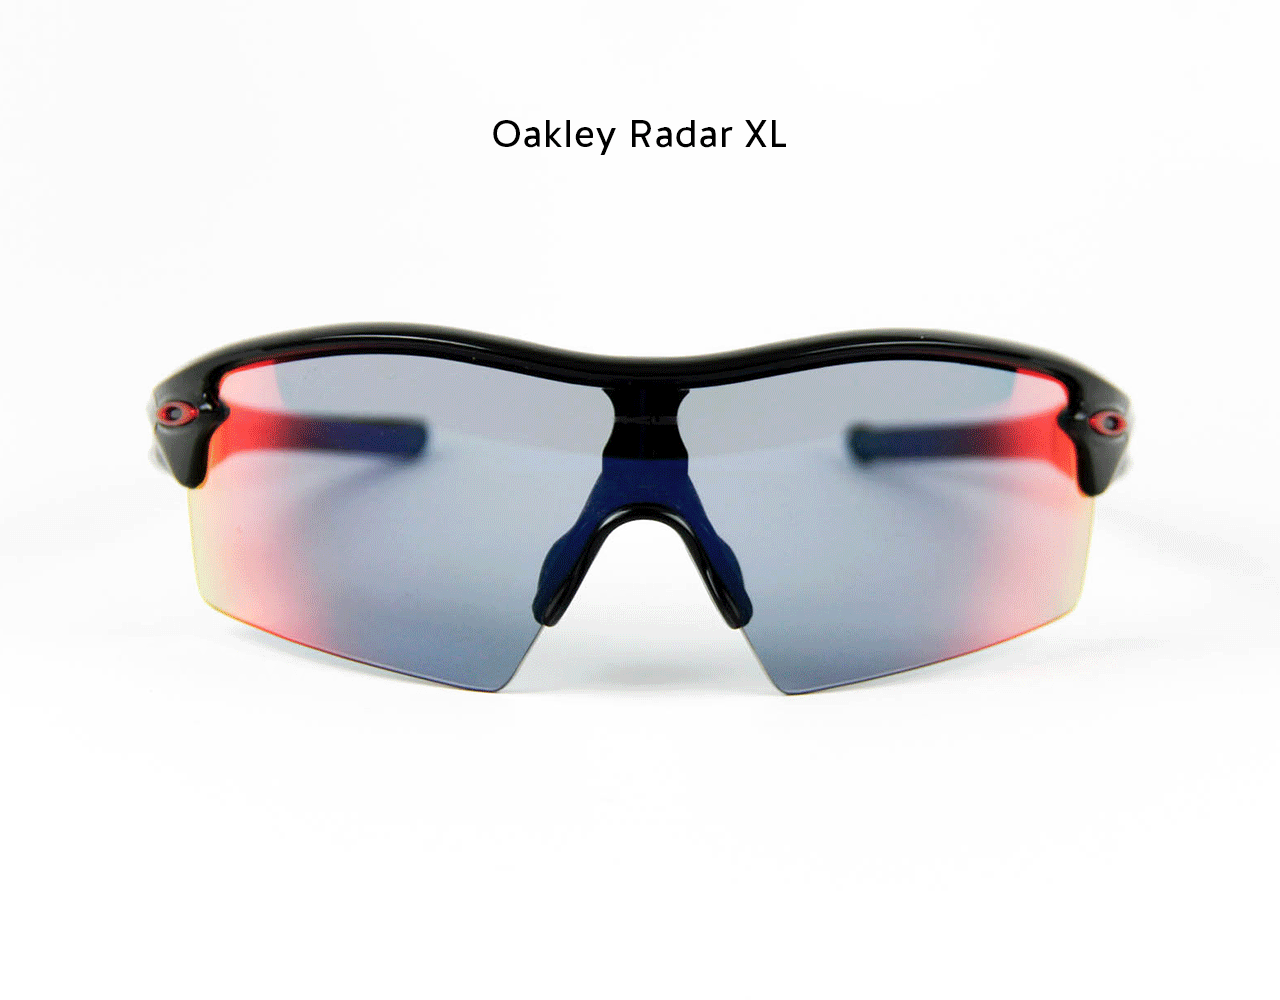 Full spinning view of Oakley Radar XL Sunglasses